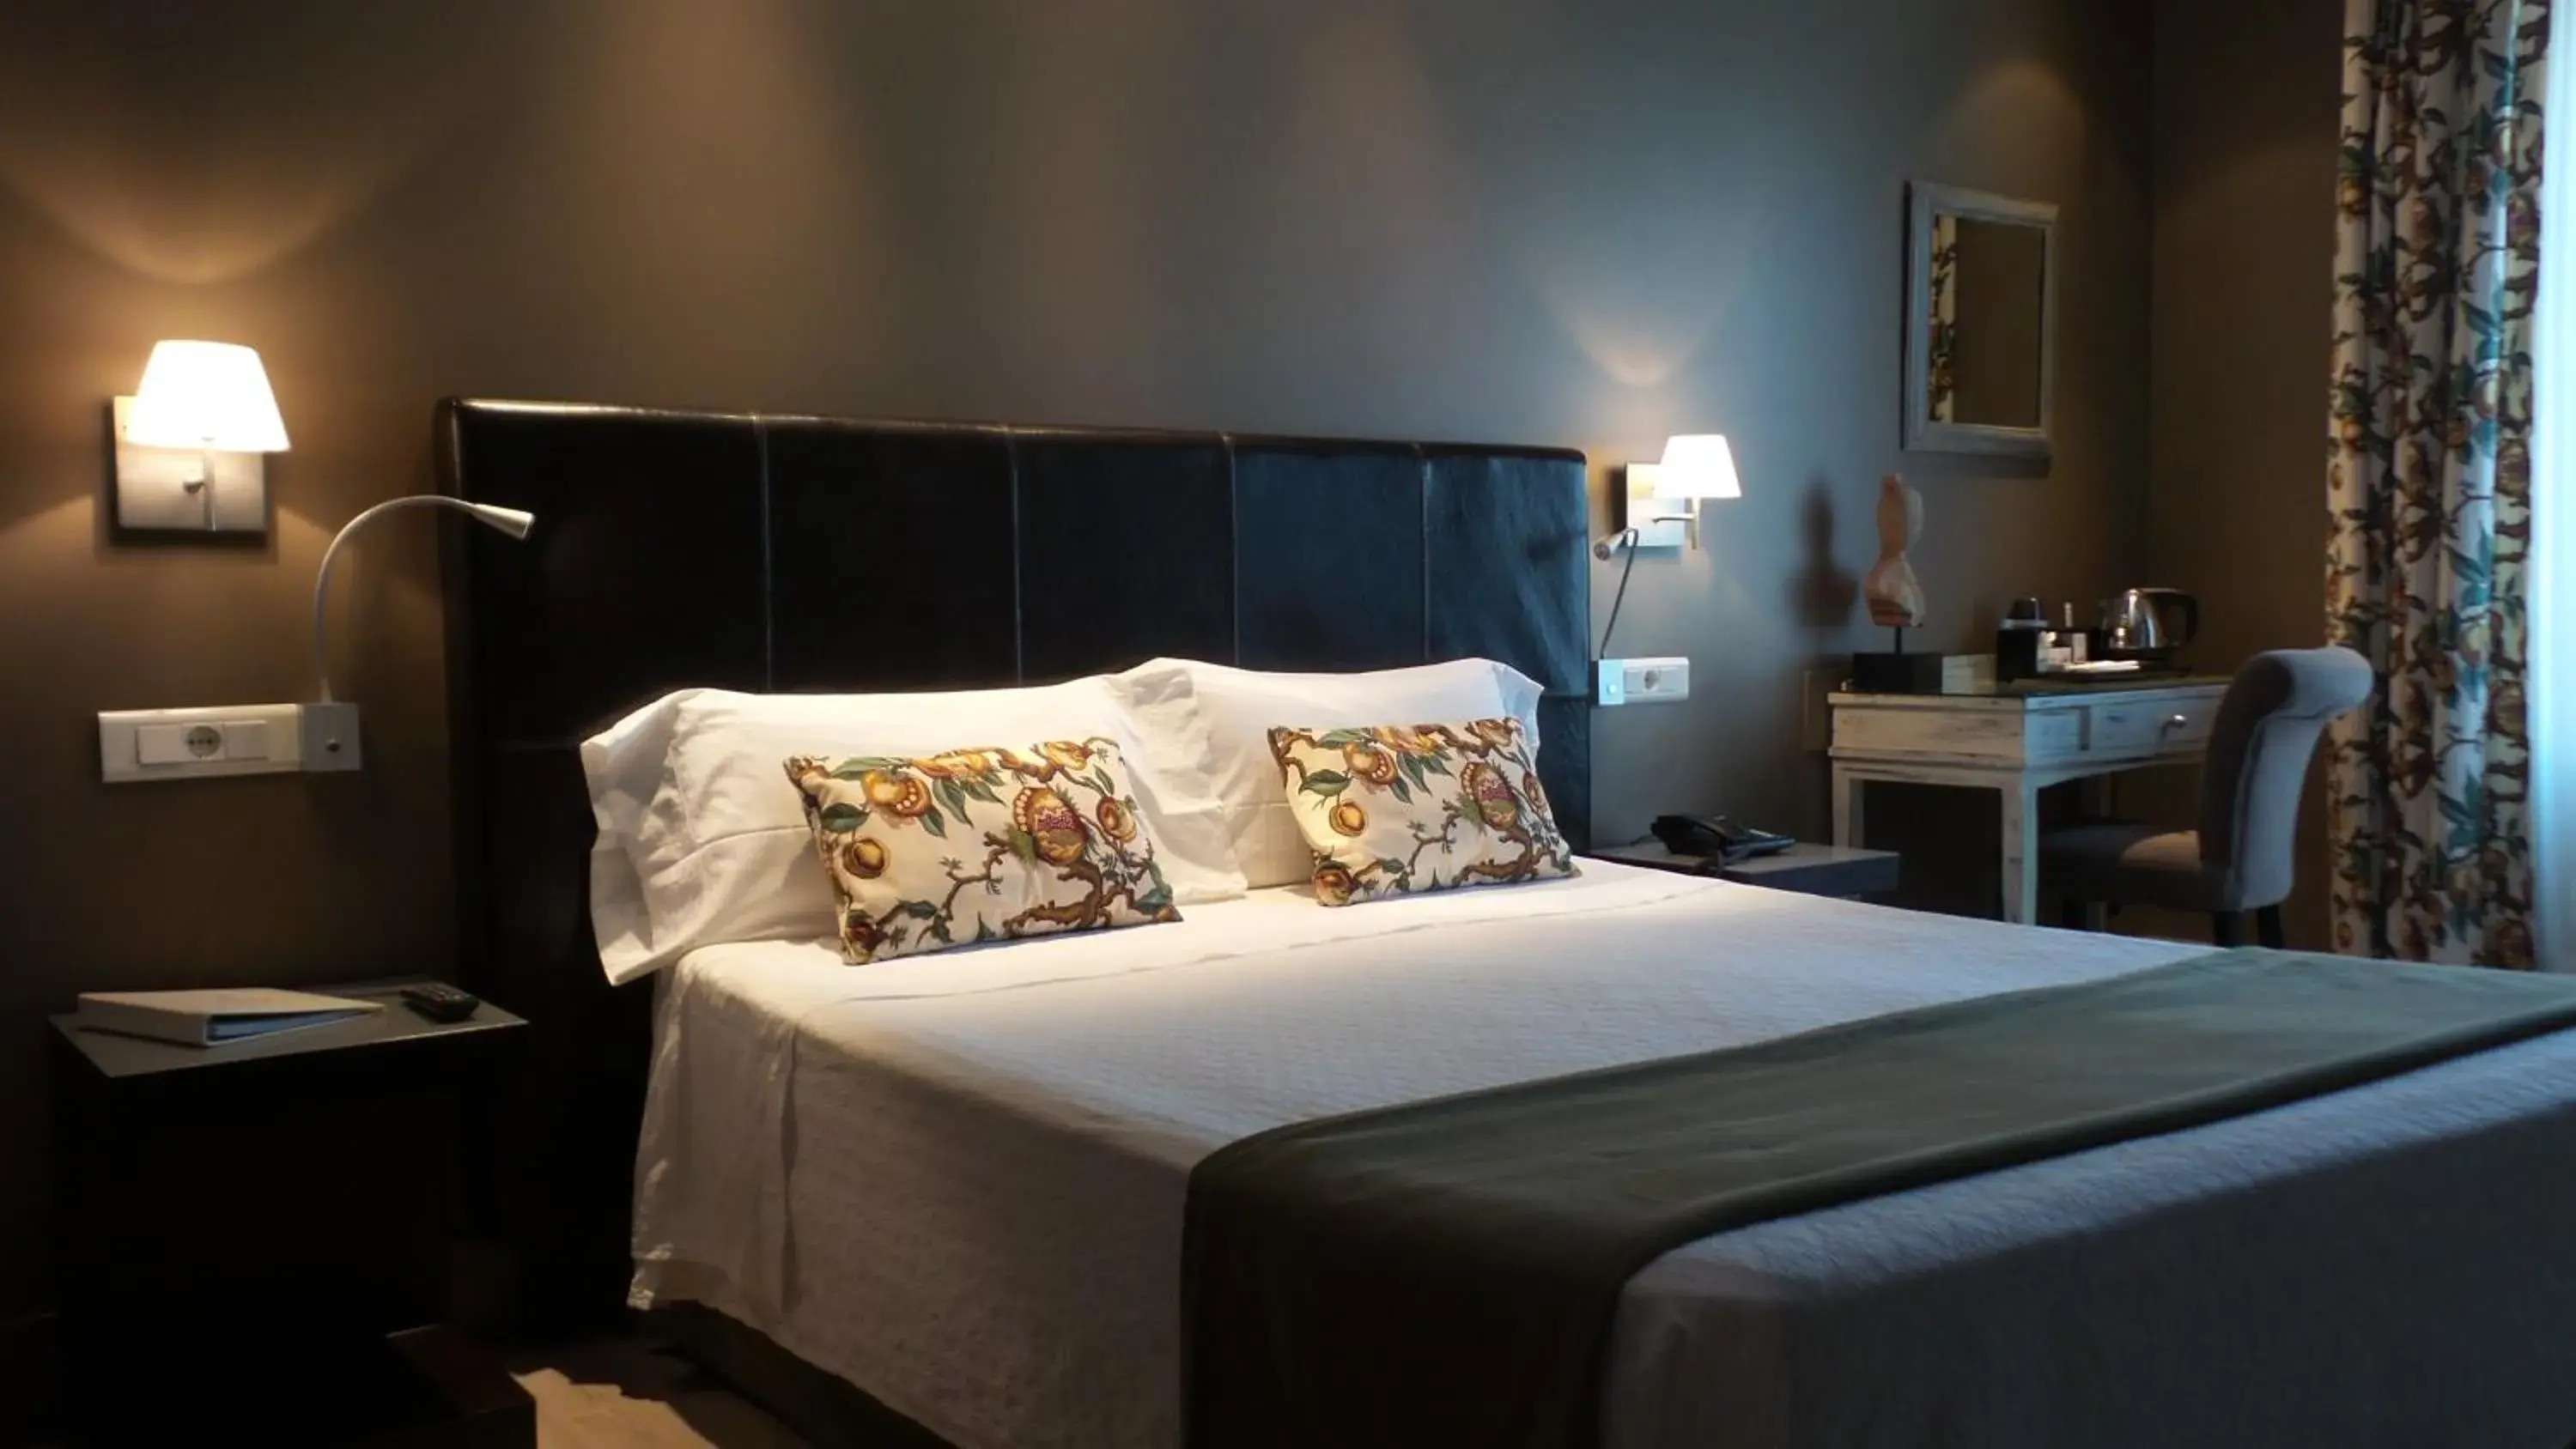 Bedroom, Room Photo in Hotel Moderno Puerta del Sol